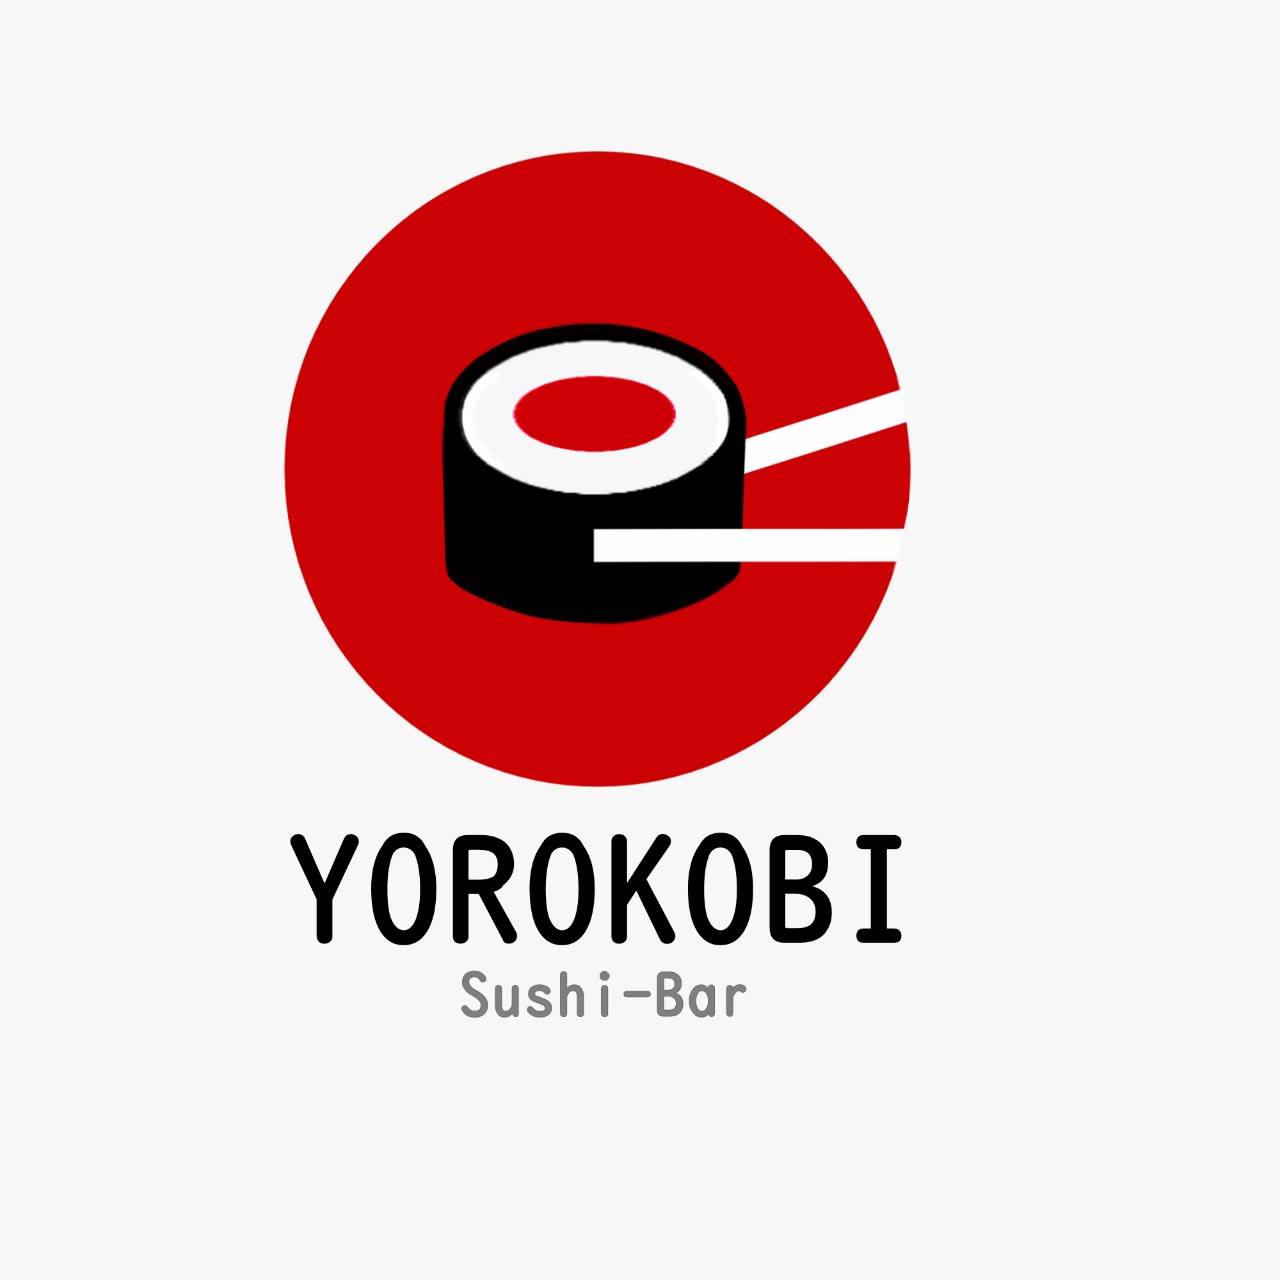 Yorokobi Sushi Bar